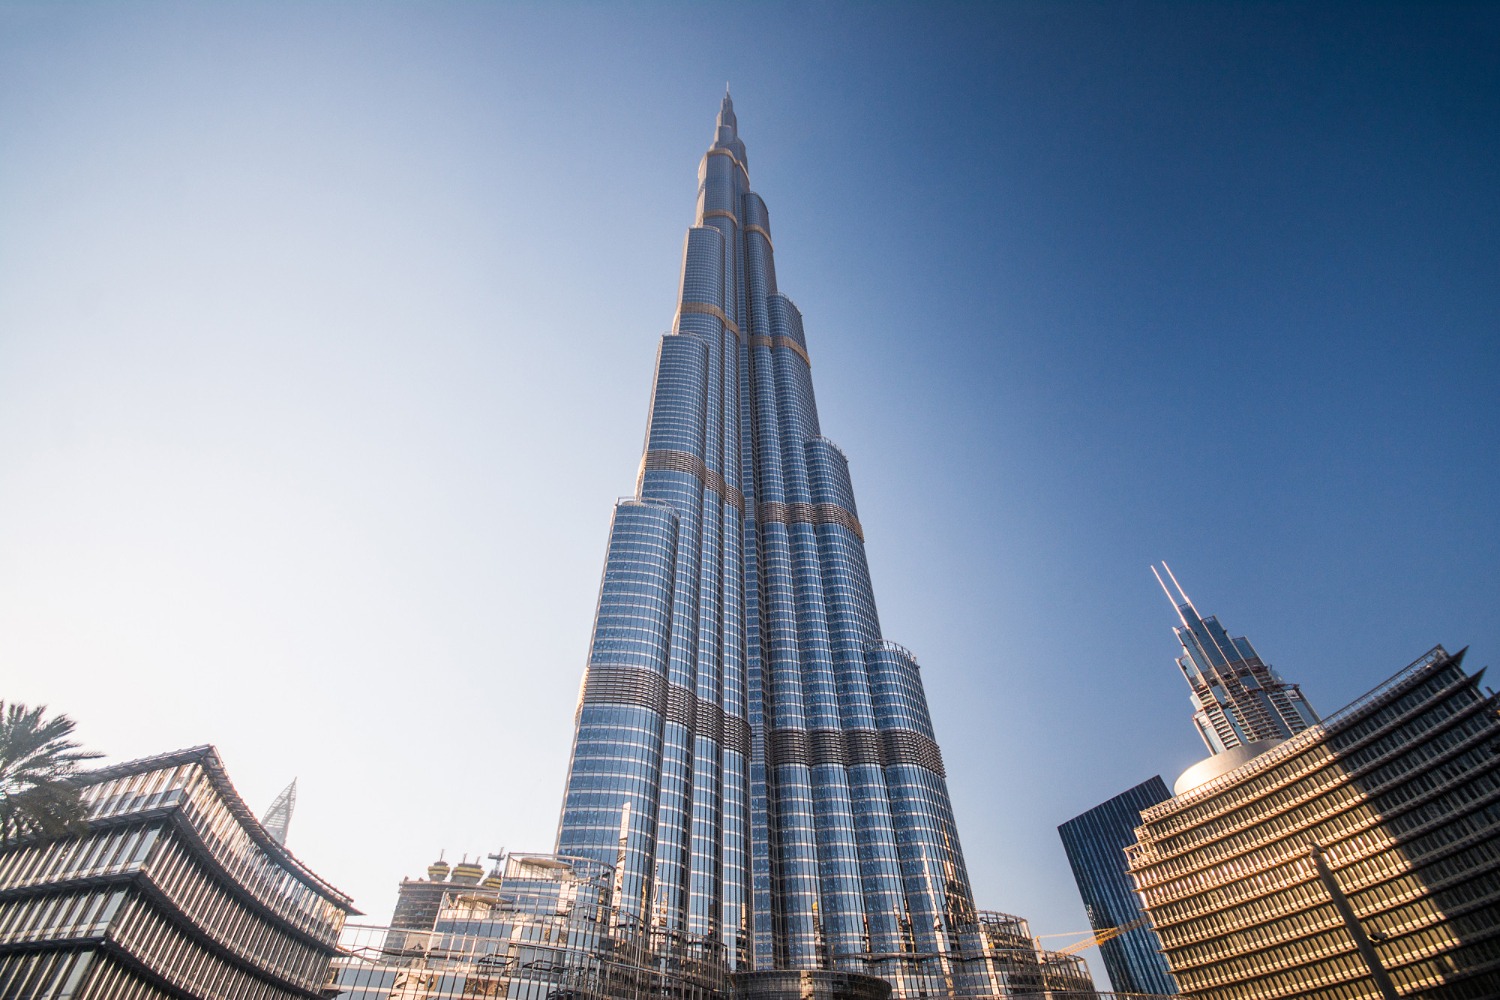 Burj khalifa building